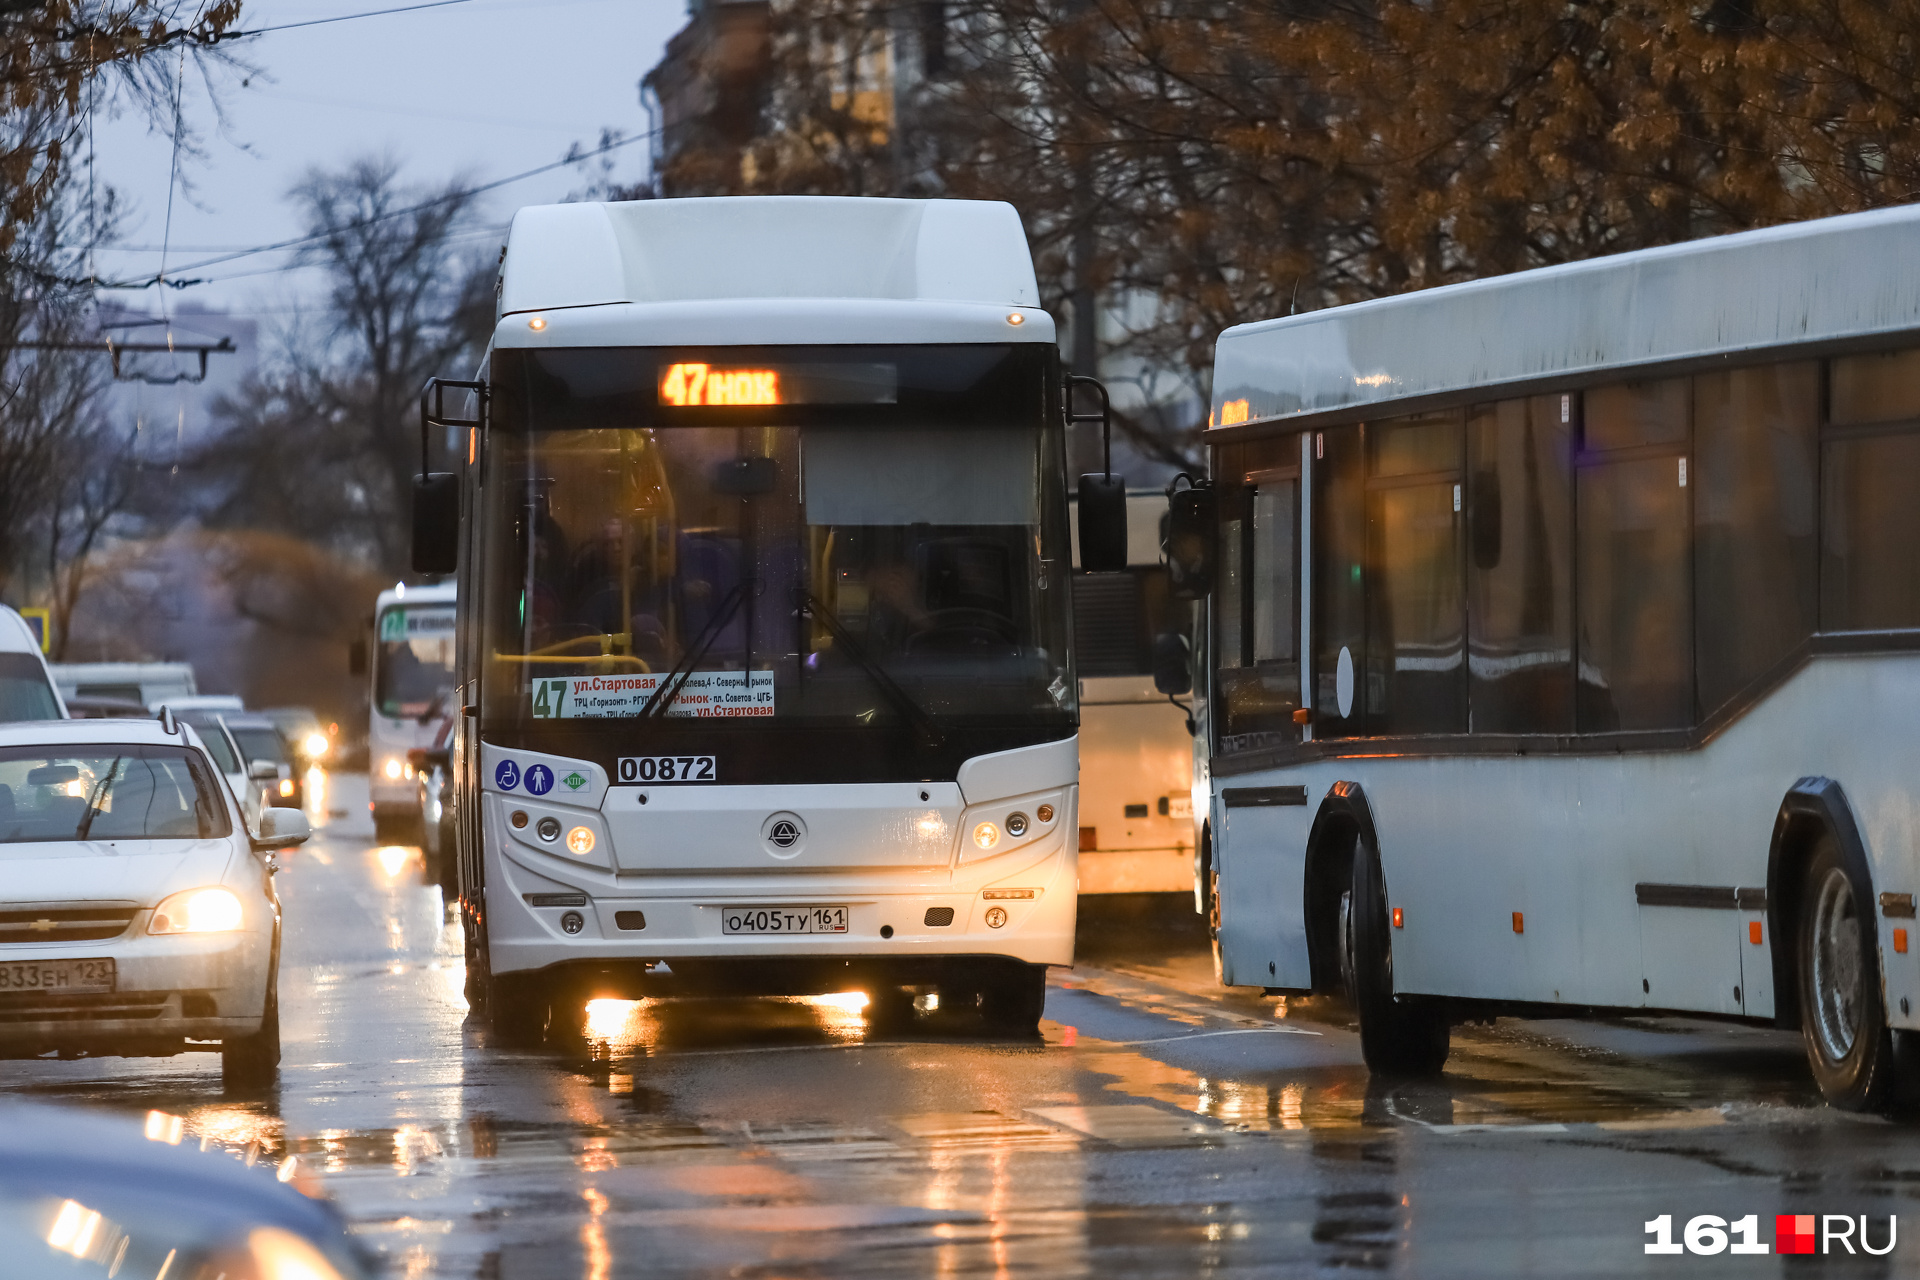 Мэрия Ростова за одну проверку городских автобусов обнаружила 13 нарушений